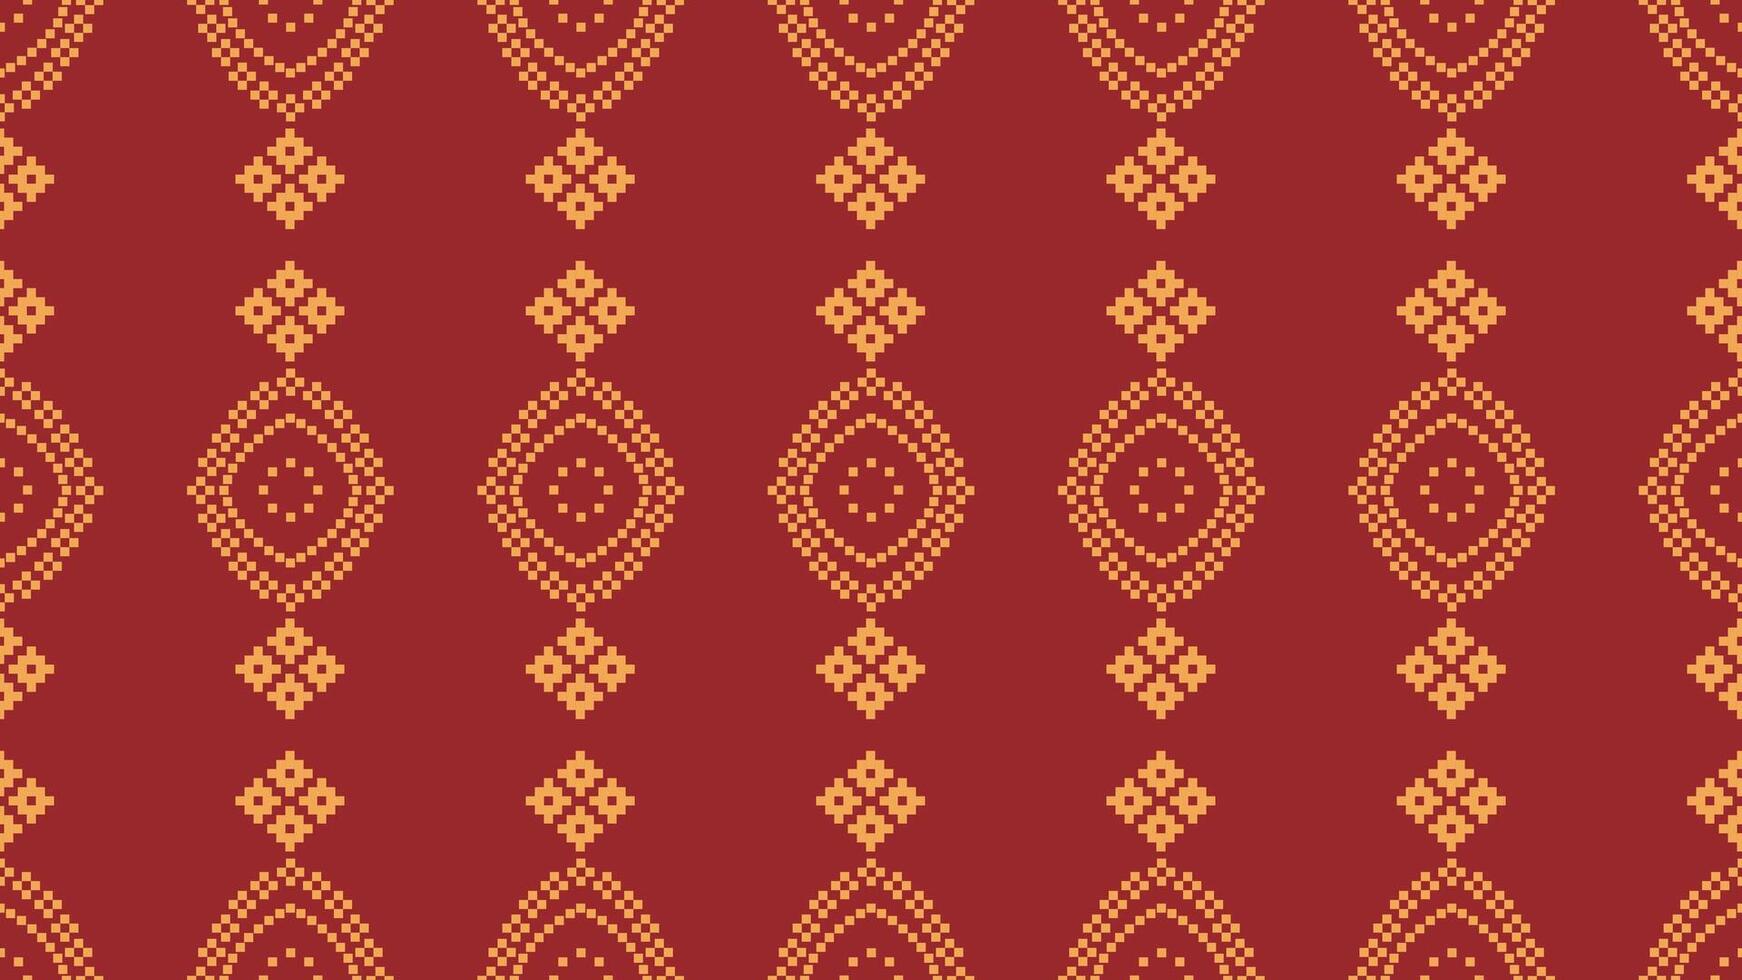 traditioneel etnisch motieven ikat meetkundig kleding stof patroon kruis steek.ikat borduurwerk etnisch oosters pixel rood achtergrond. abstract,vector,illustratie. textuur, kerst, decoratie, behang. vector